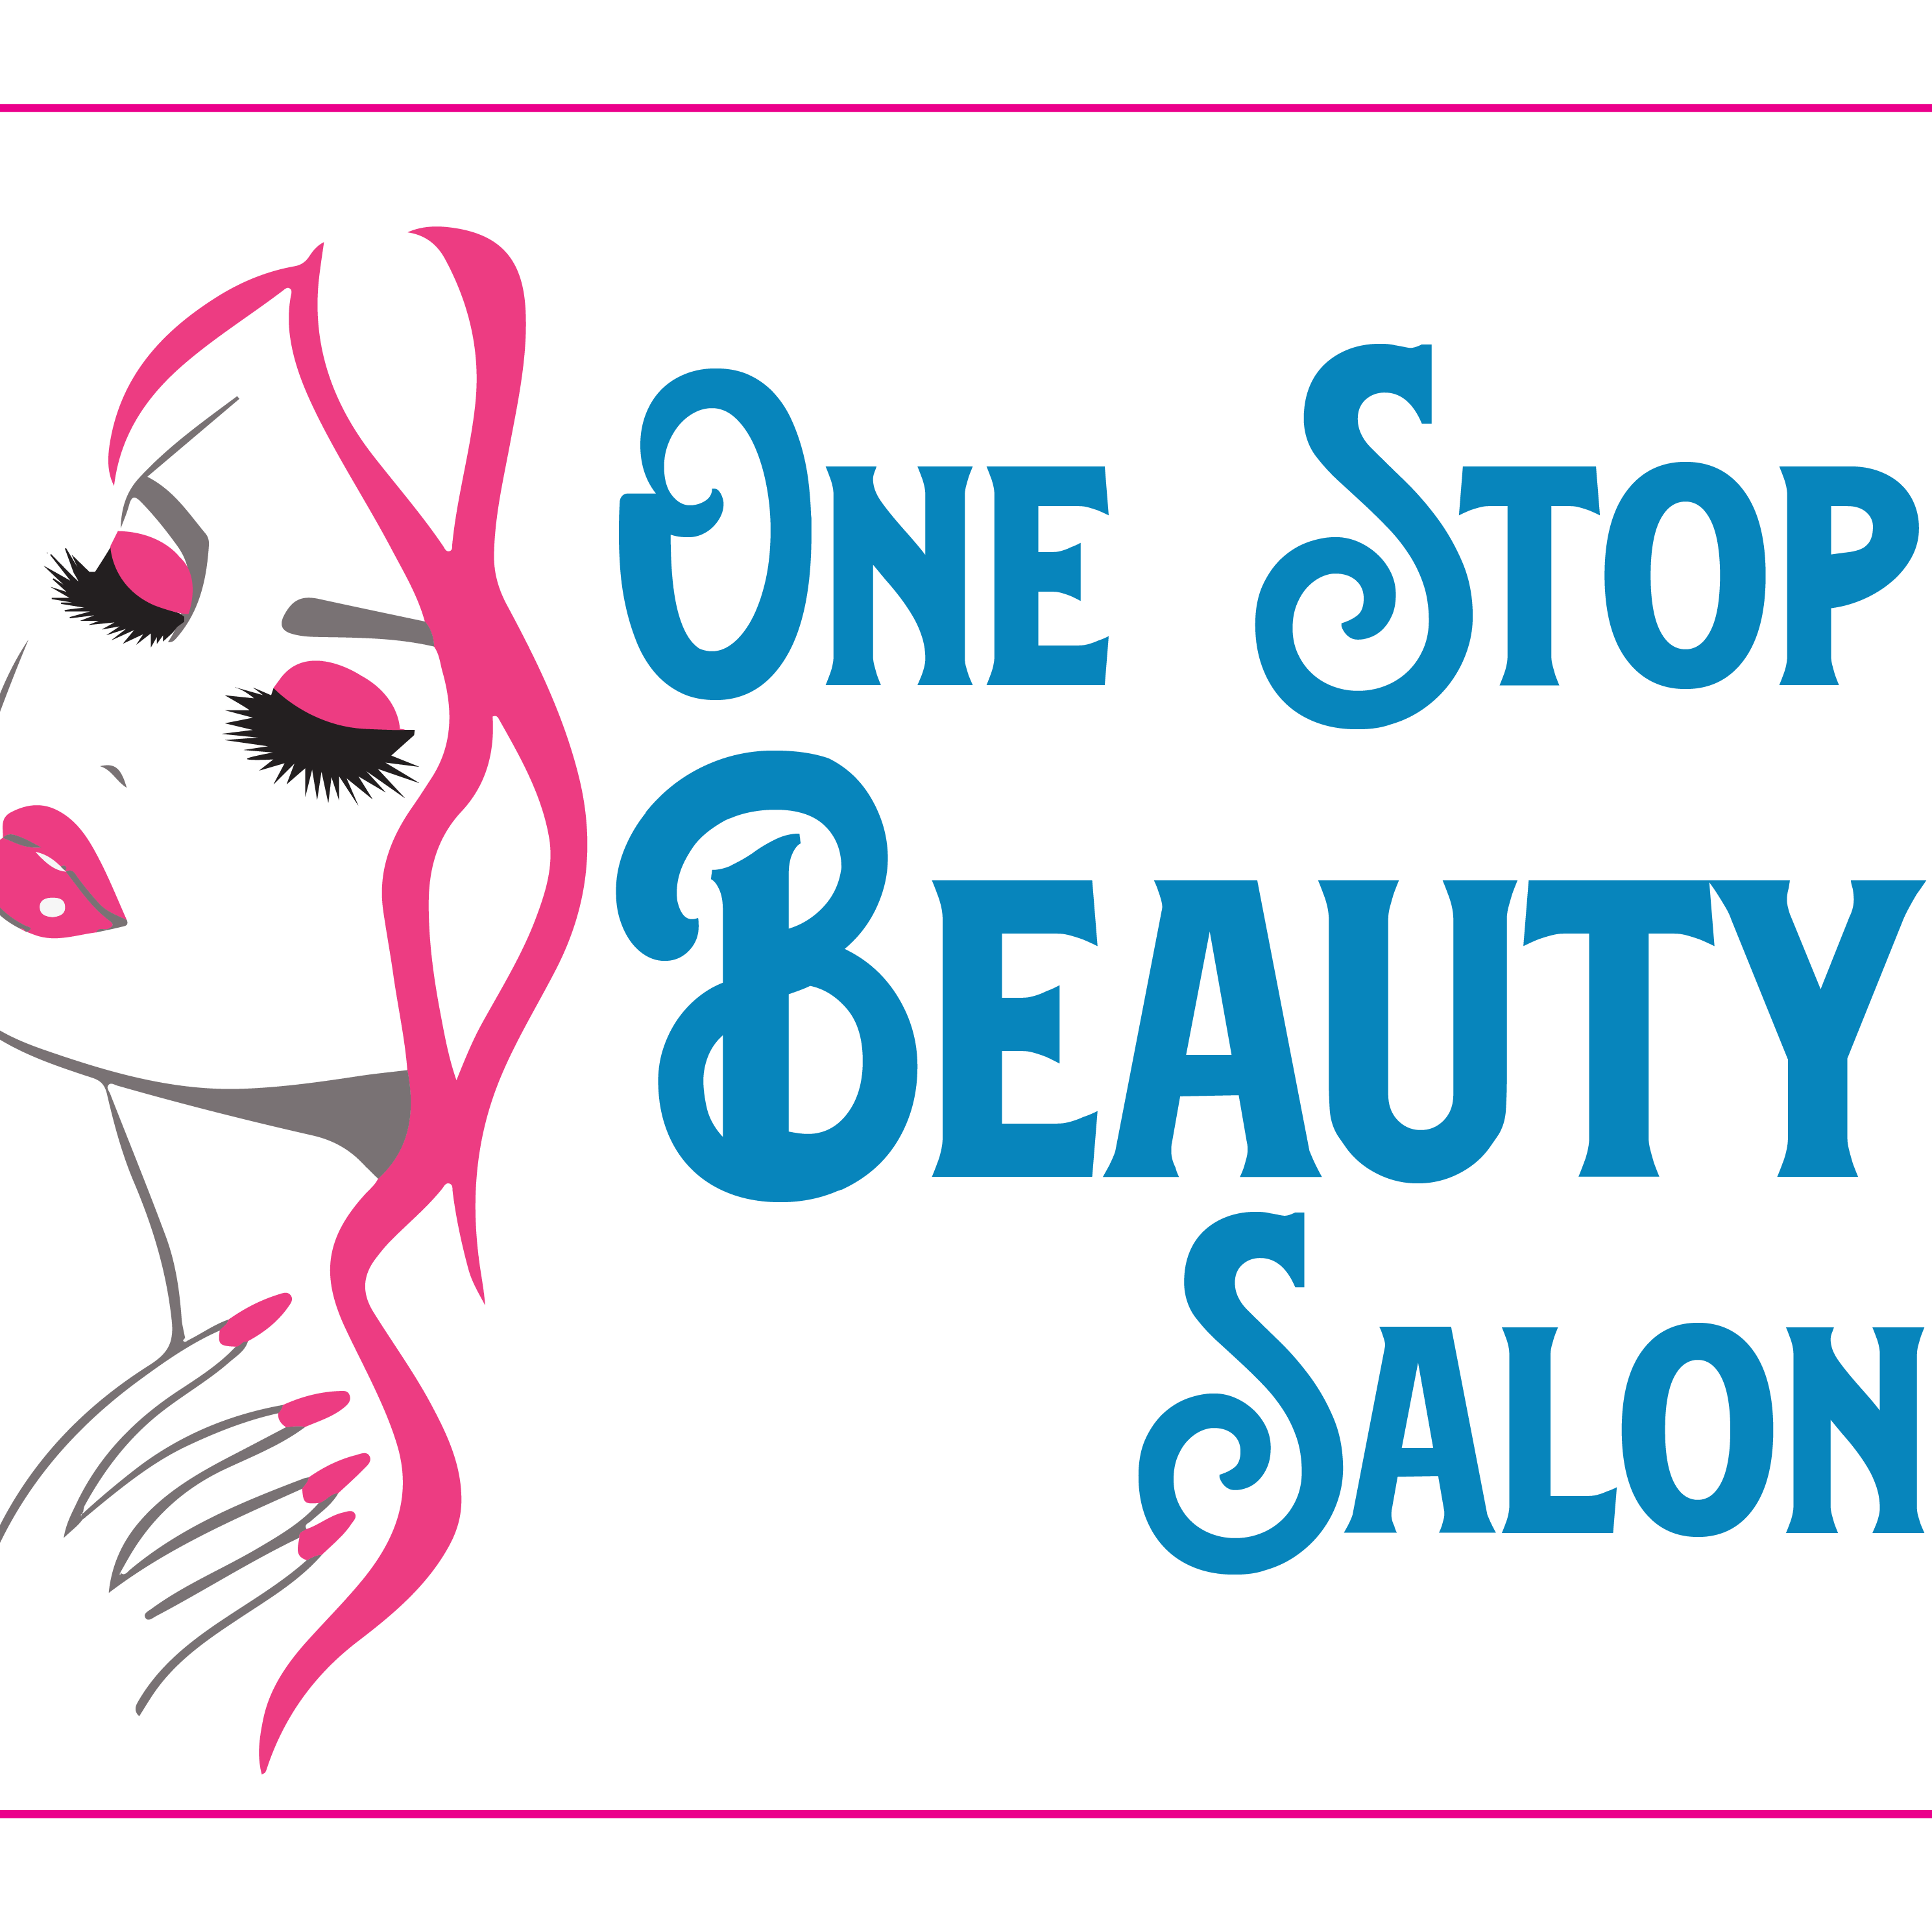 One Stop Beauty Salon logo